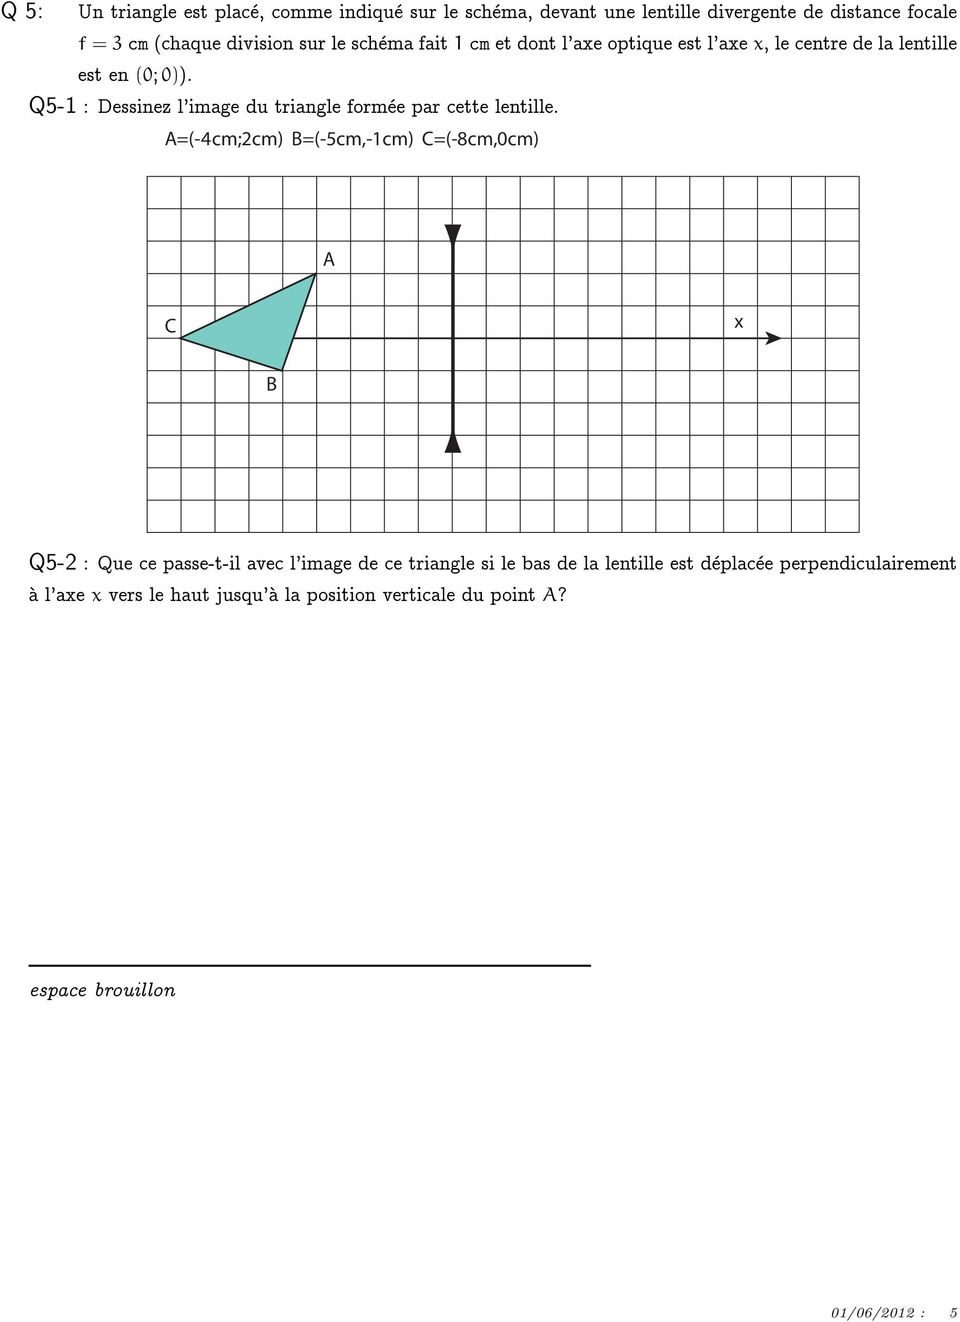 Q5-1 : Dessinez l'image du triangle formee par cette lentille.